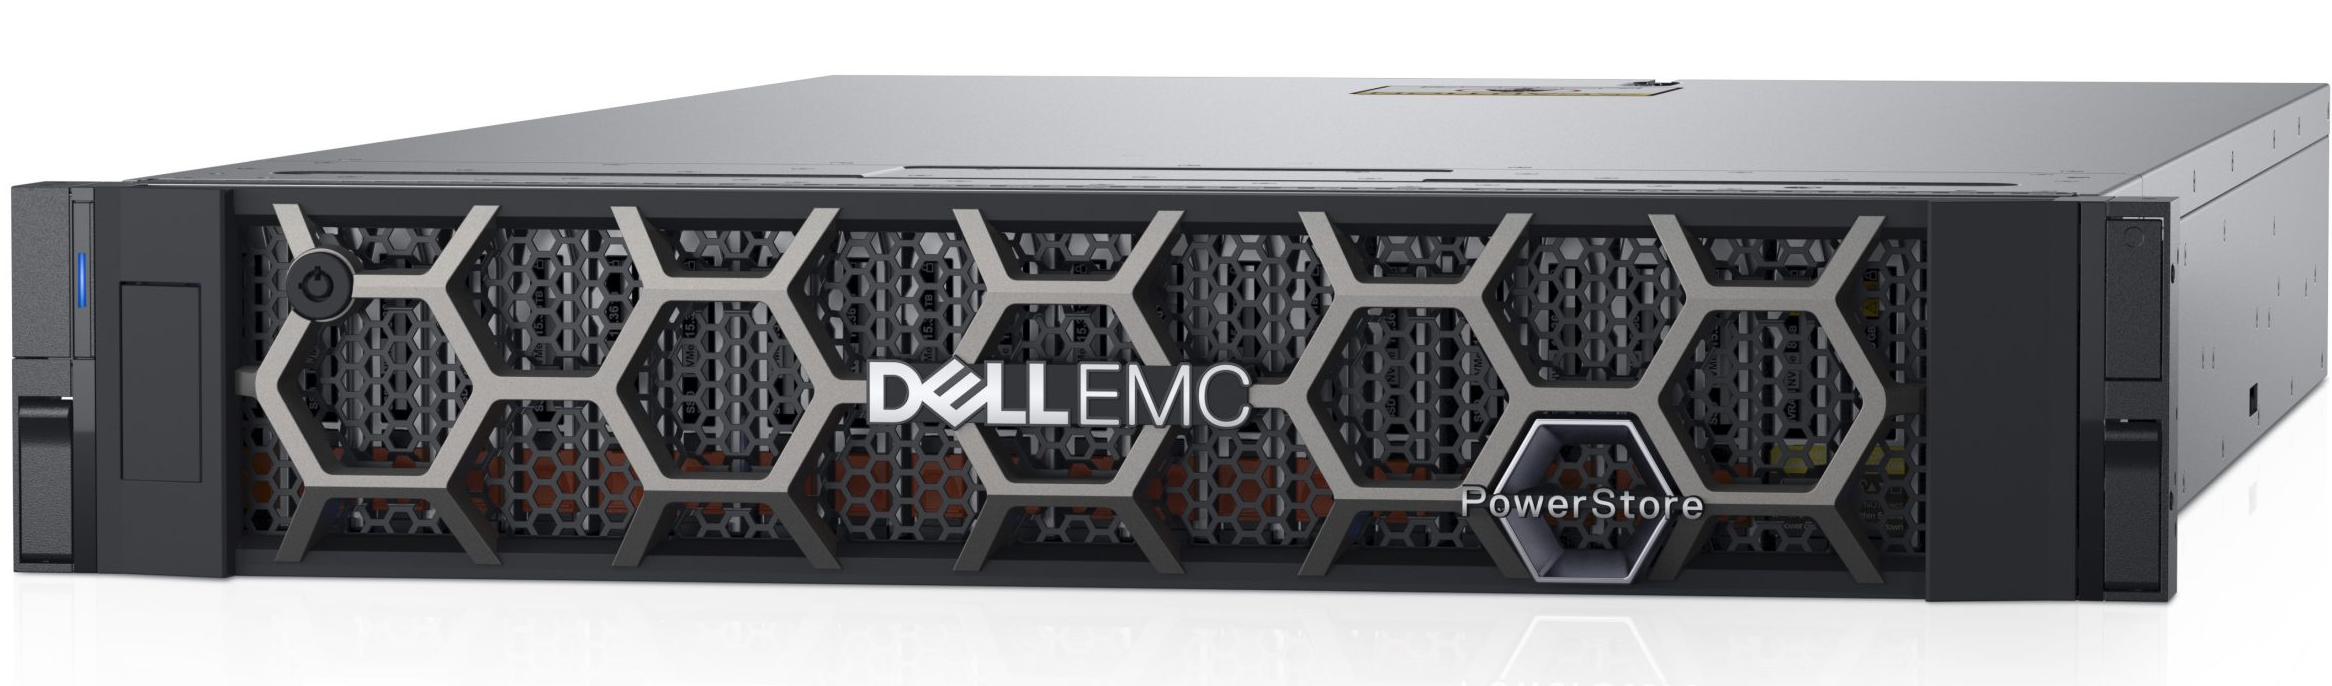 Dell posiluje výkon a automatizaci úložného systému PowerStore